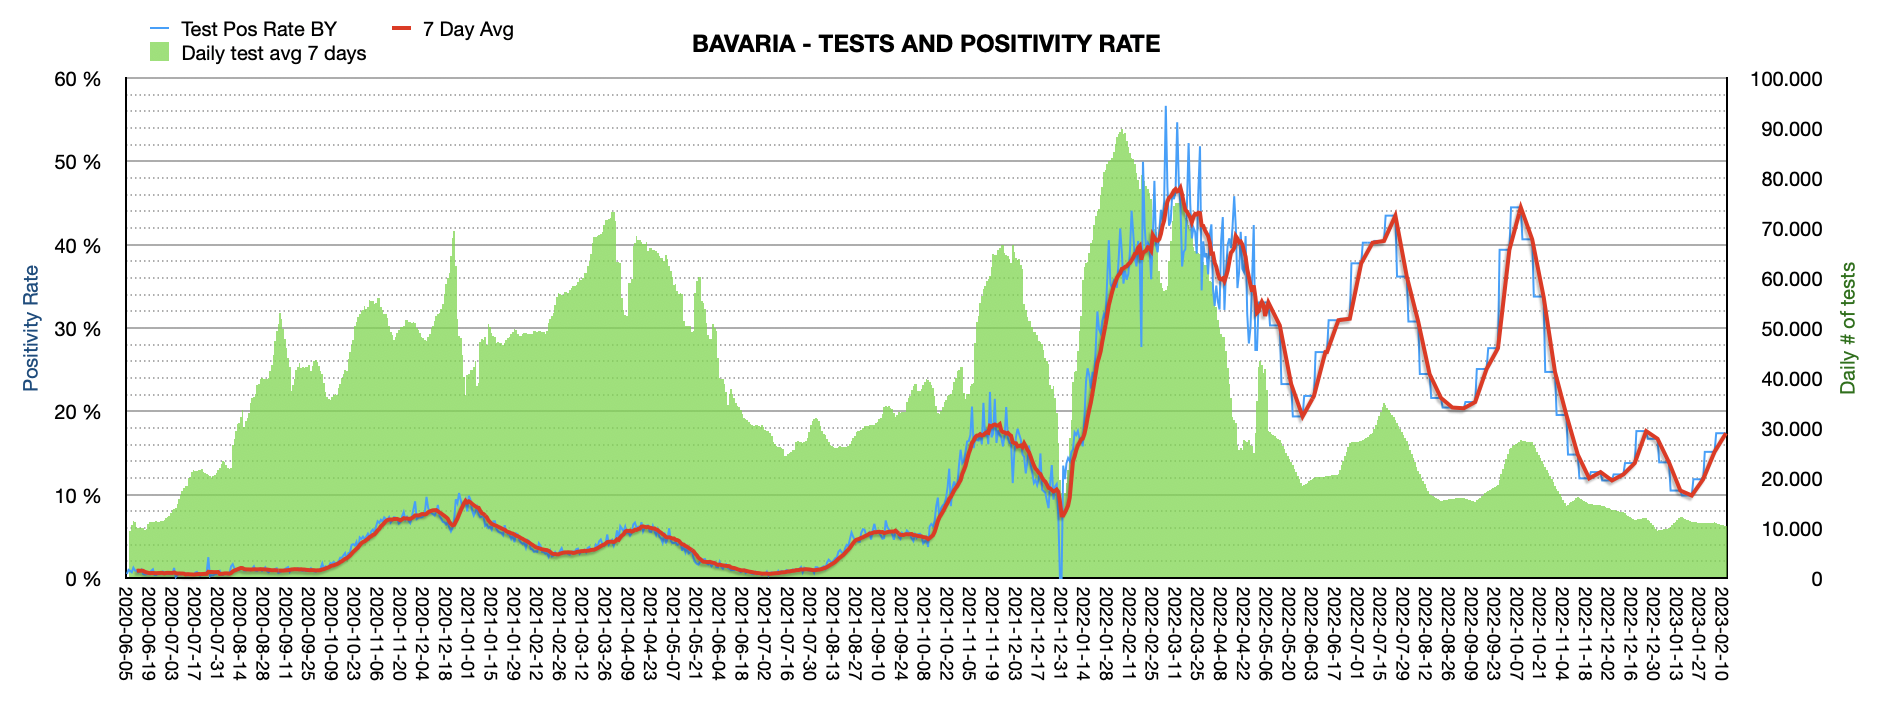 Grafik mit durchgeführten PCR Tests pro Tag in Bayern seit Juni 2020. Die Zahl der Tests pro Tag ist mit 10.389 ziemlich niedrig und weit vom Maximum von ca. 100.000 Tests/Tag entfernt. Die Positivrate steigt auf jetzt 17,38%.